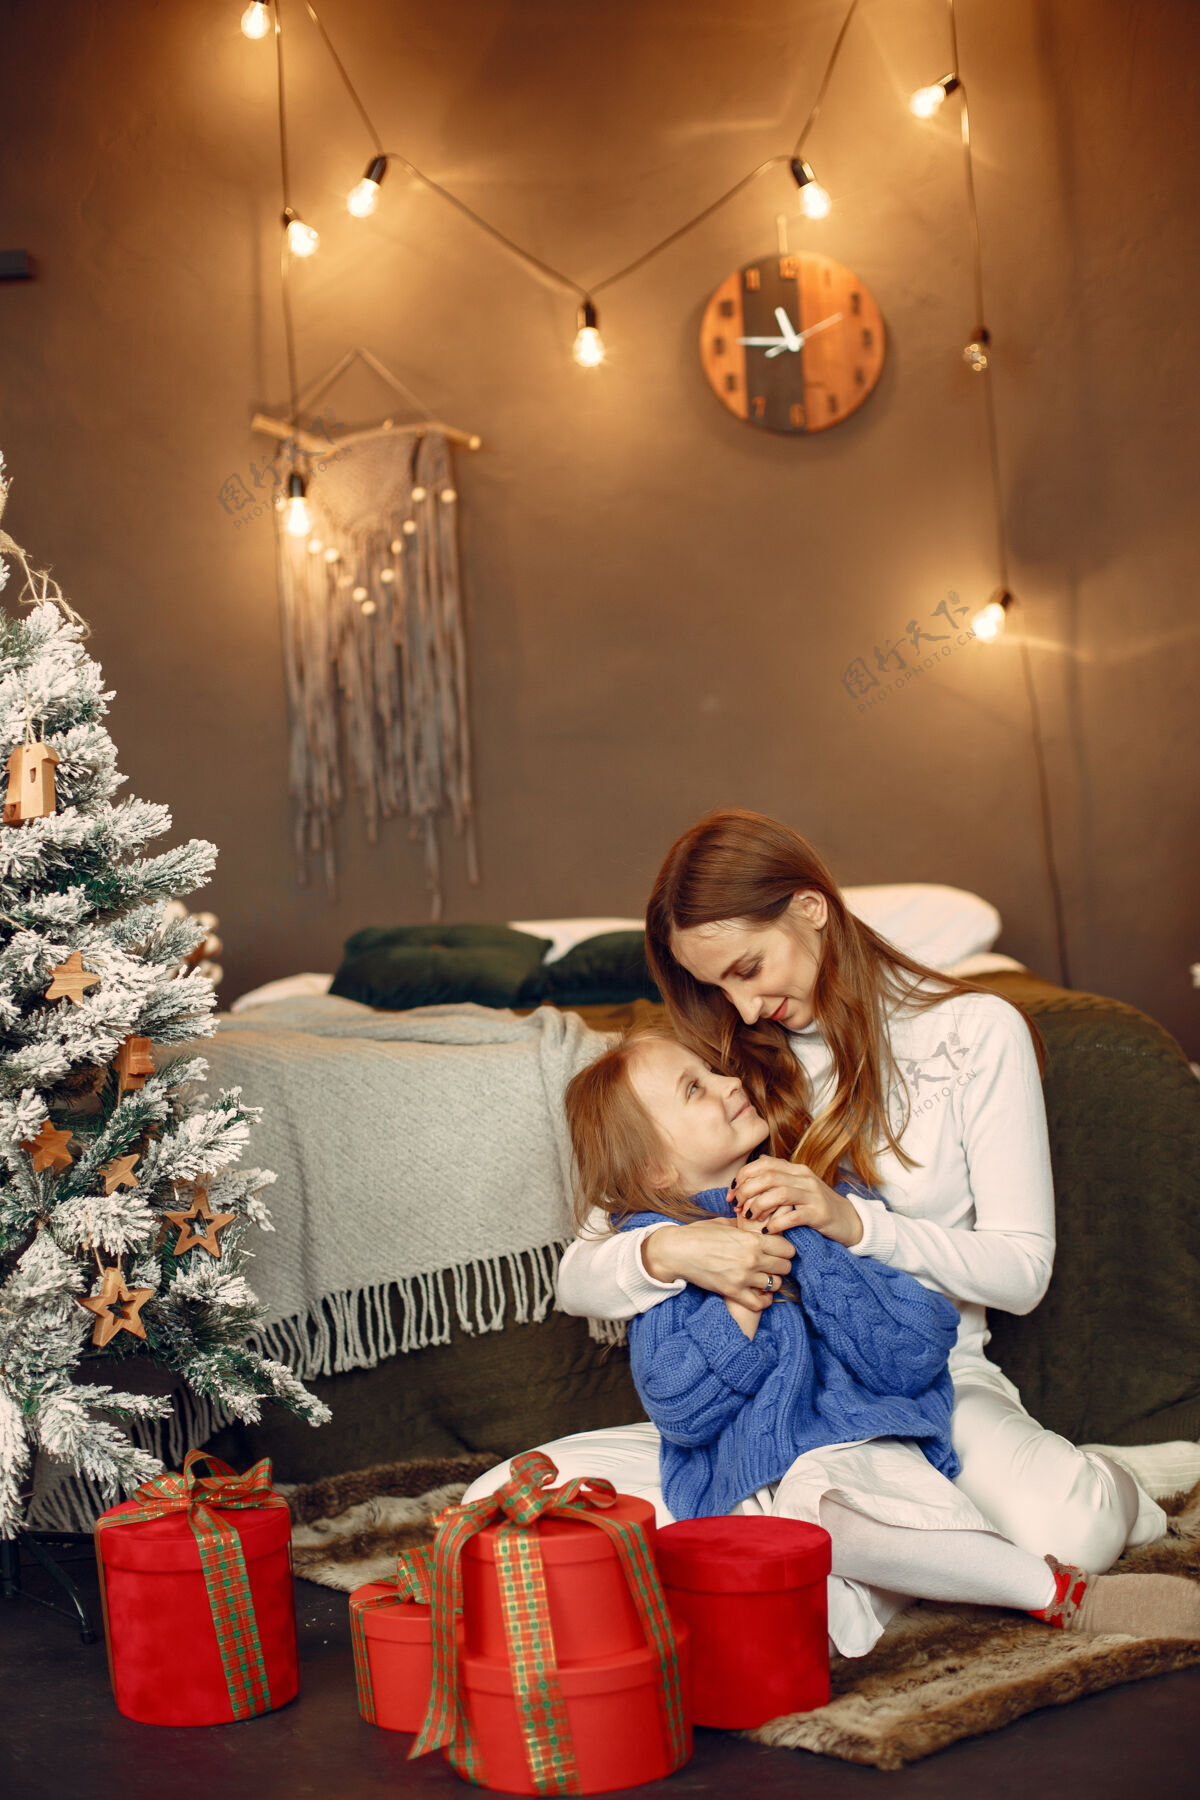 毛衣人们在为圣诞节做准备母亲在和女儿玩耍一家人在节日的房间里休息孩子穿着蓝色毛衣女人蓝色面纱